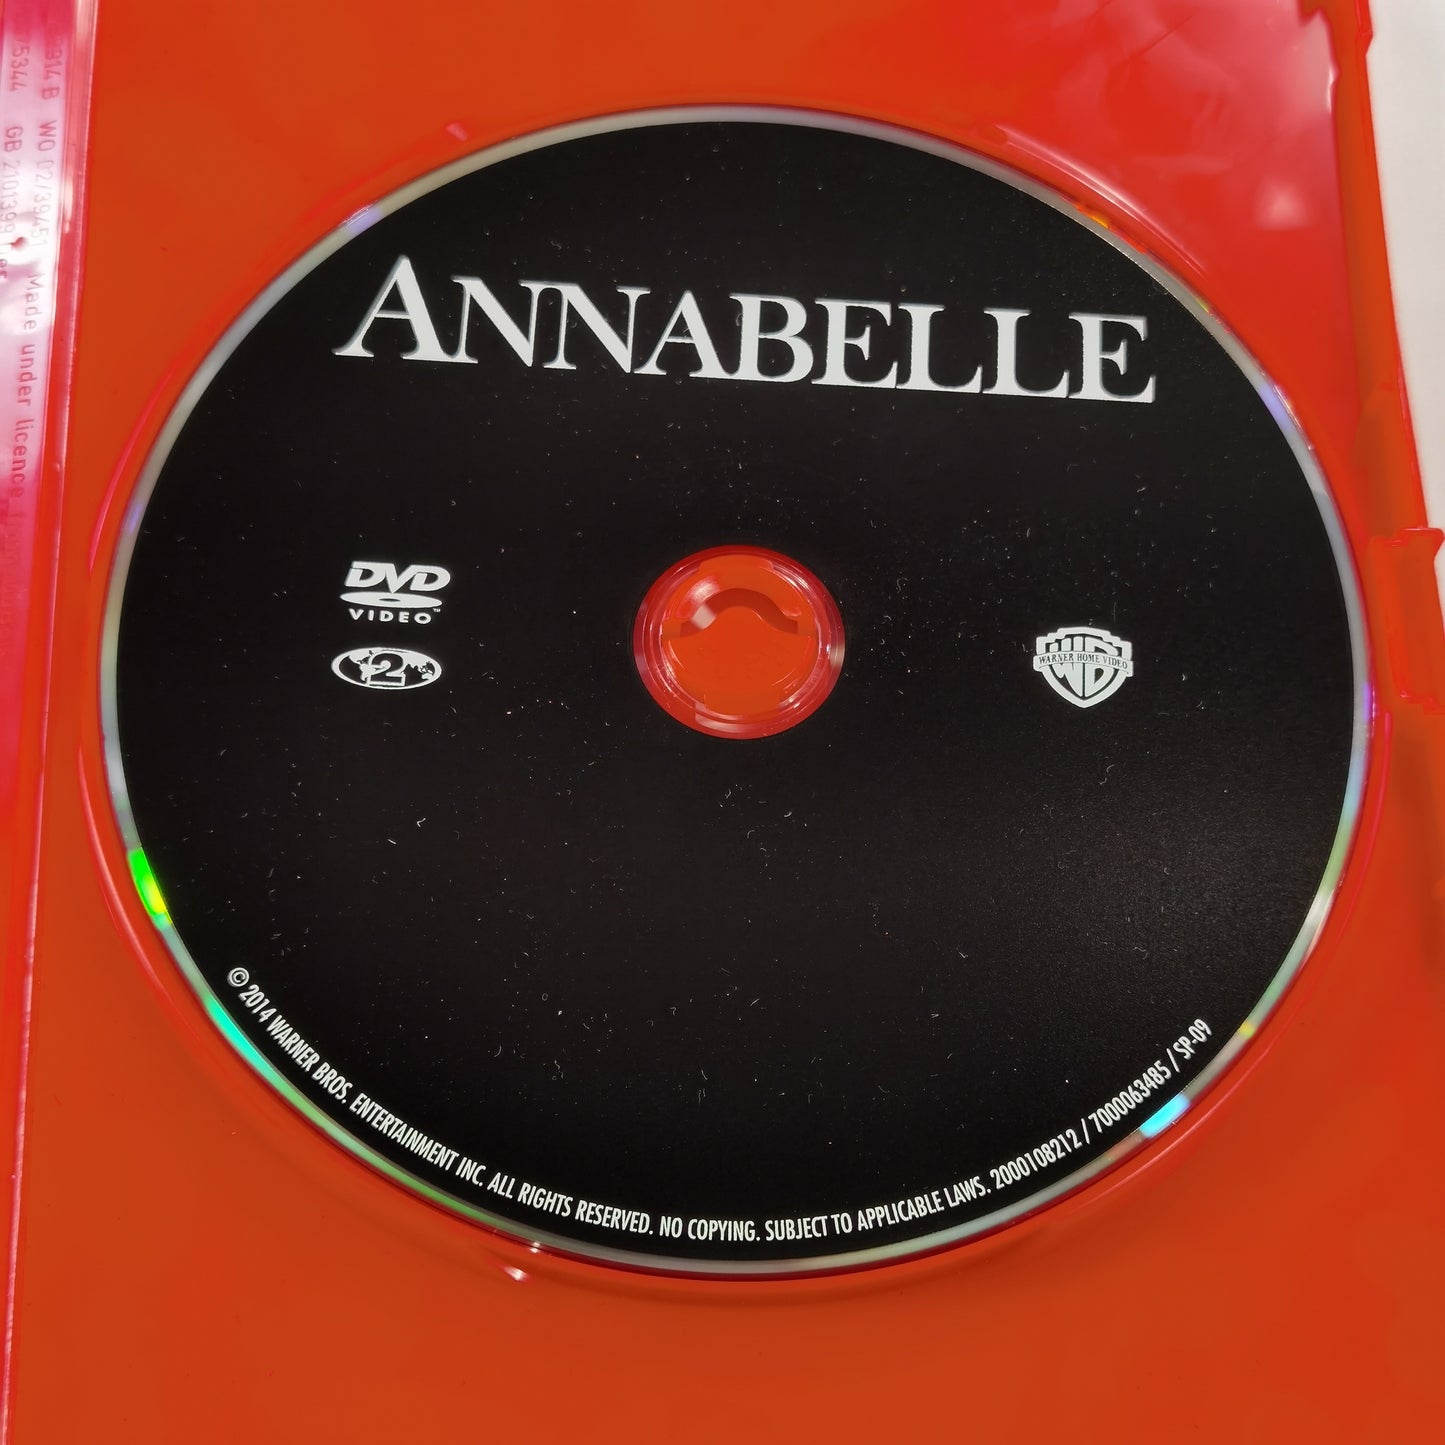 Annabelle (2014) - DVD FI 2015 RC